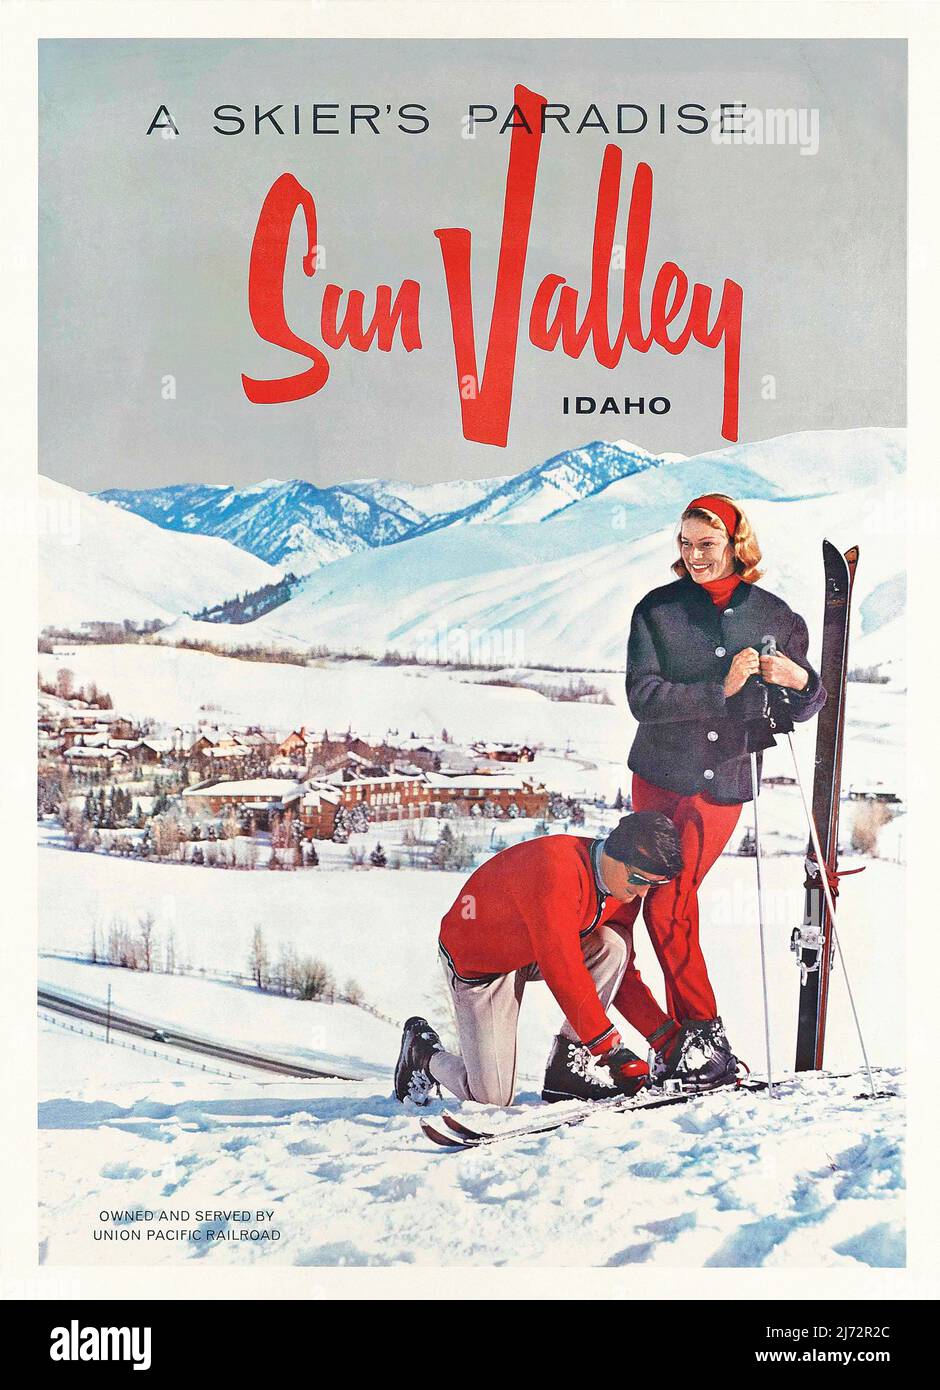 Vintage 1950s Amerika Winter Sports Travel Poster - Ein Paradies für Skifahrer - Sun Valley - Idaho um 1950 Stockfoto